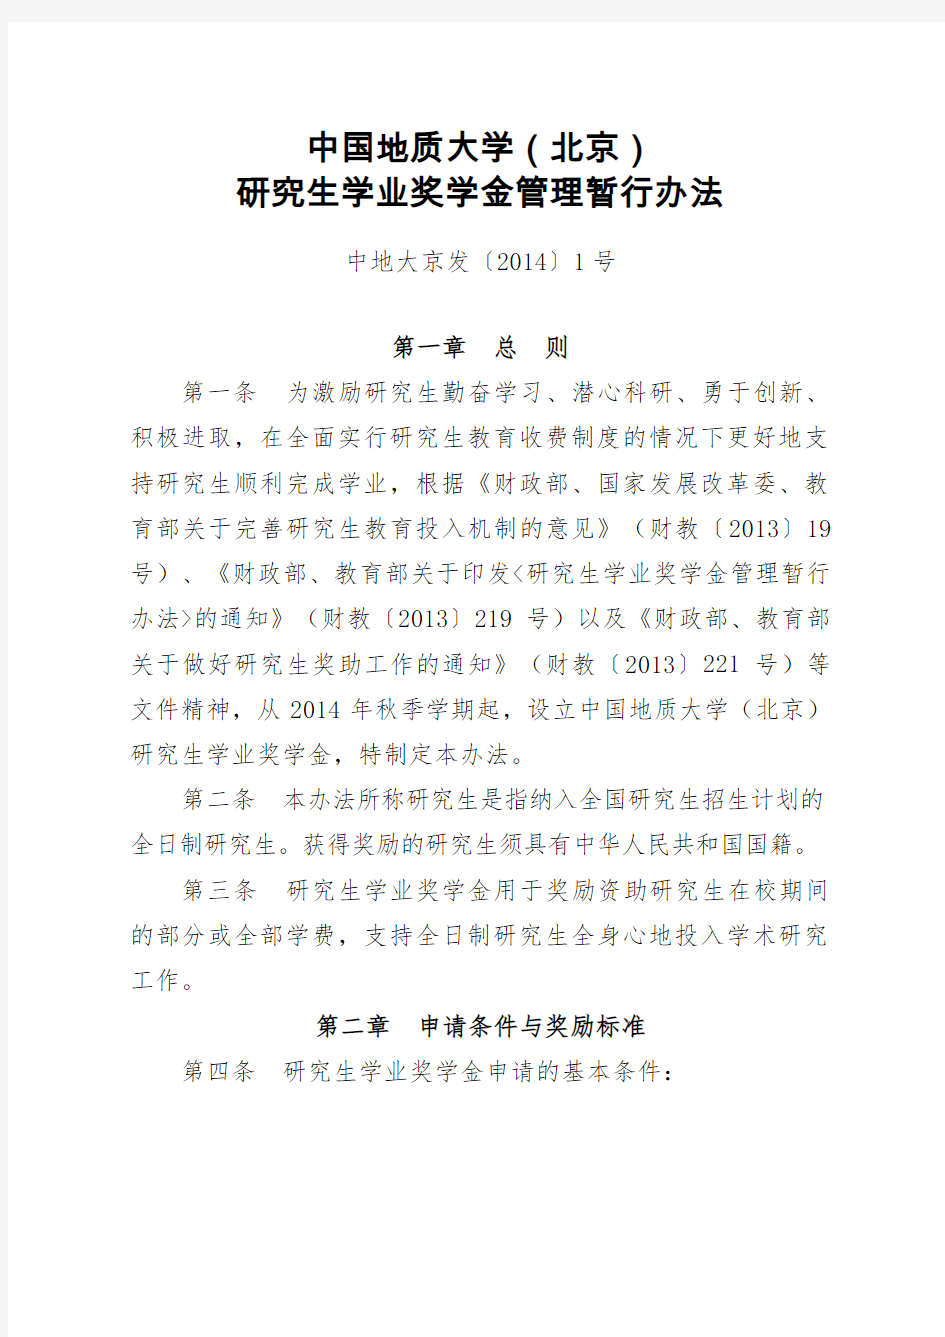 中国地质大学(北京)研究生学业奖学金管理暂行办法